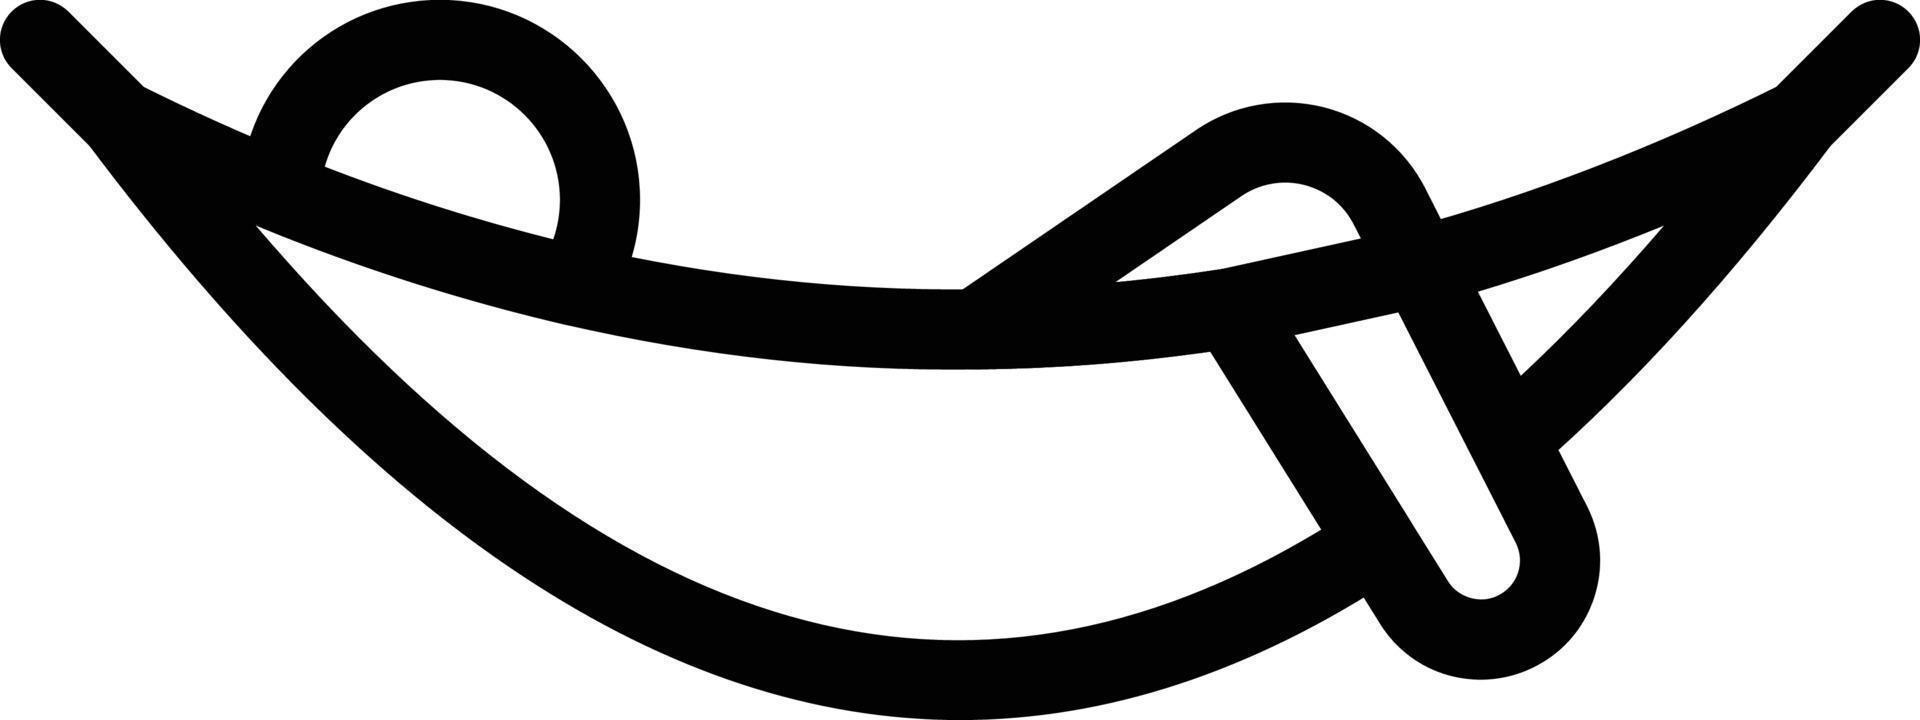 illustrazione vettoriale dell'amaca su uno sfondo simboli di qualità premium. icone vettoriali per il concetto e la progettazione grafica.